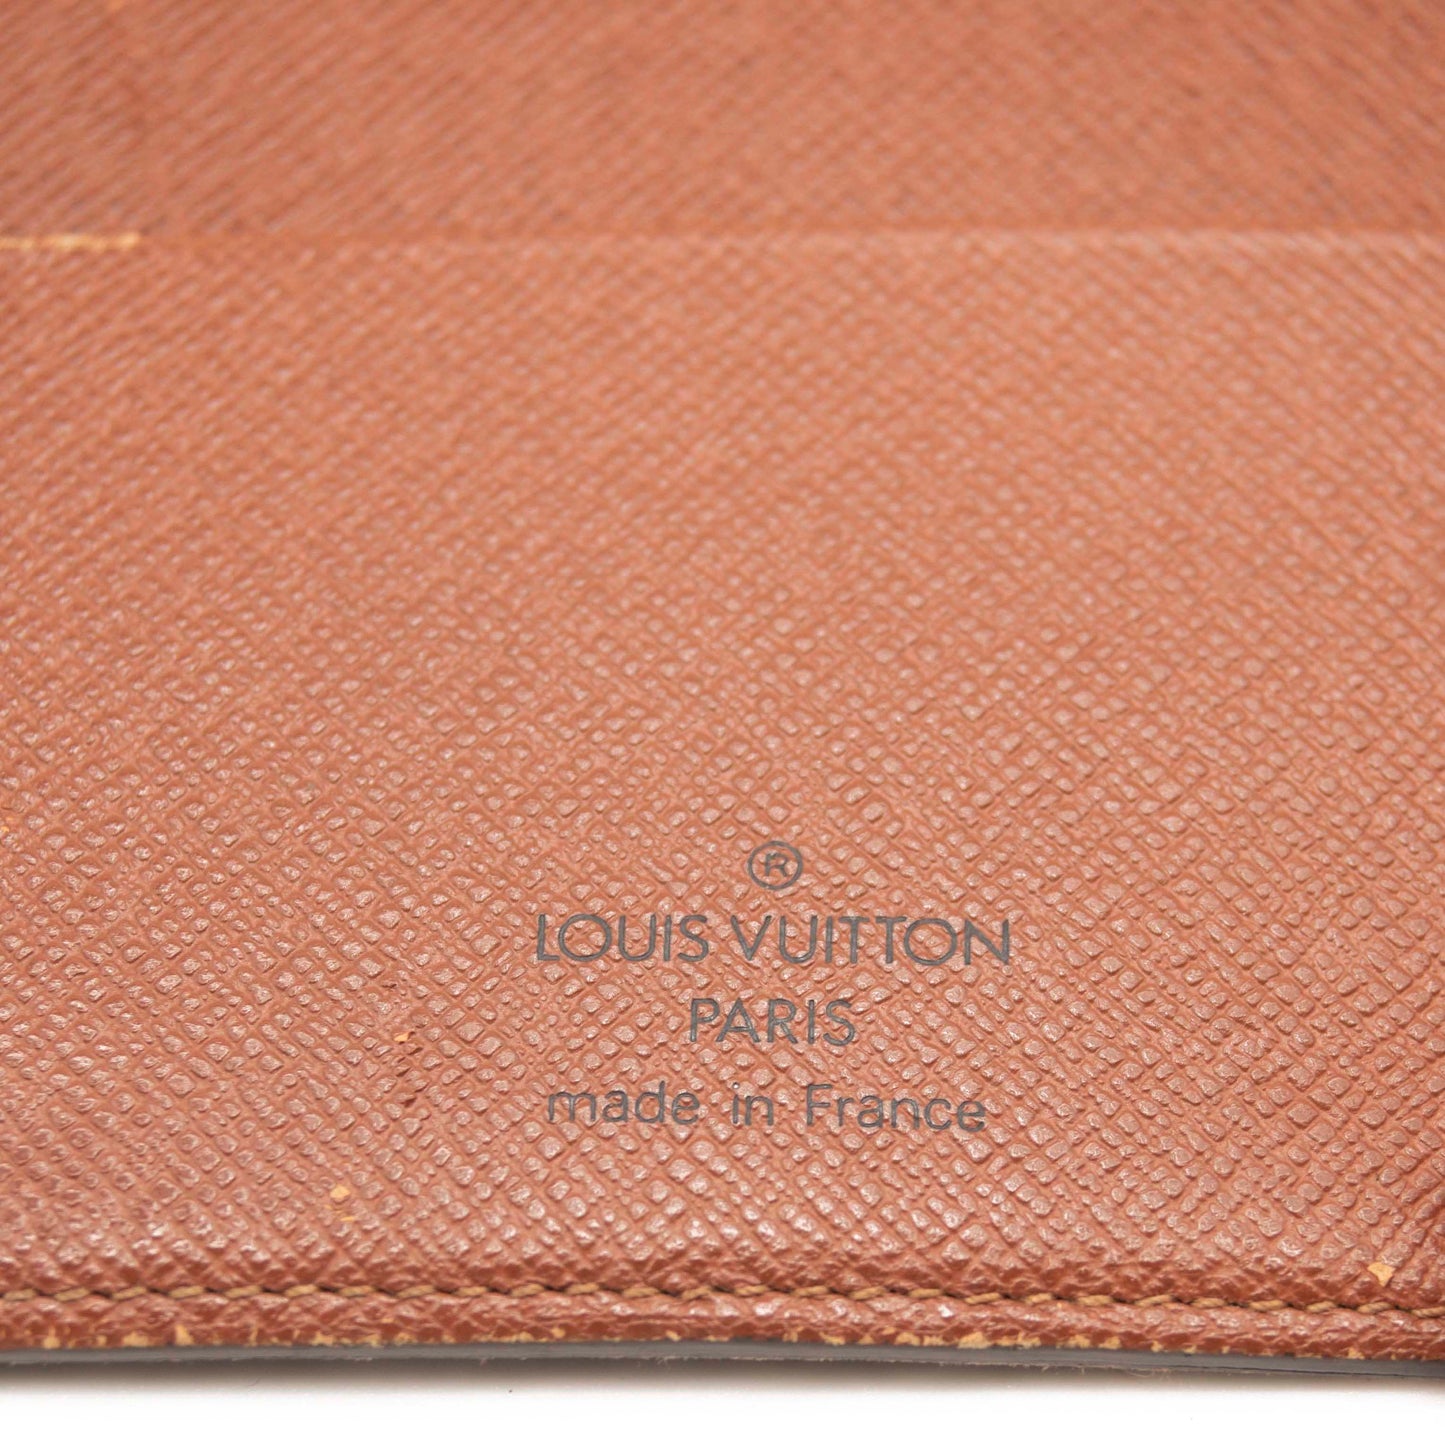 Louis Vuitton Medium Ring Agenda Cover Monogram MM